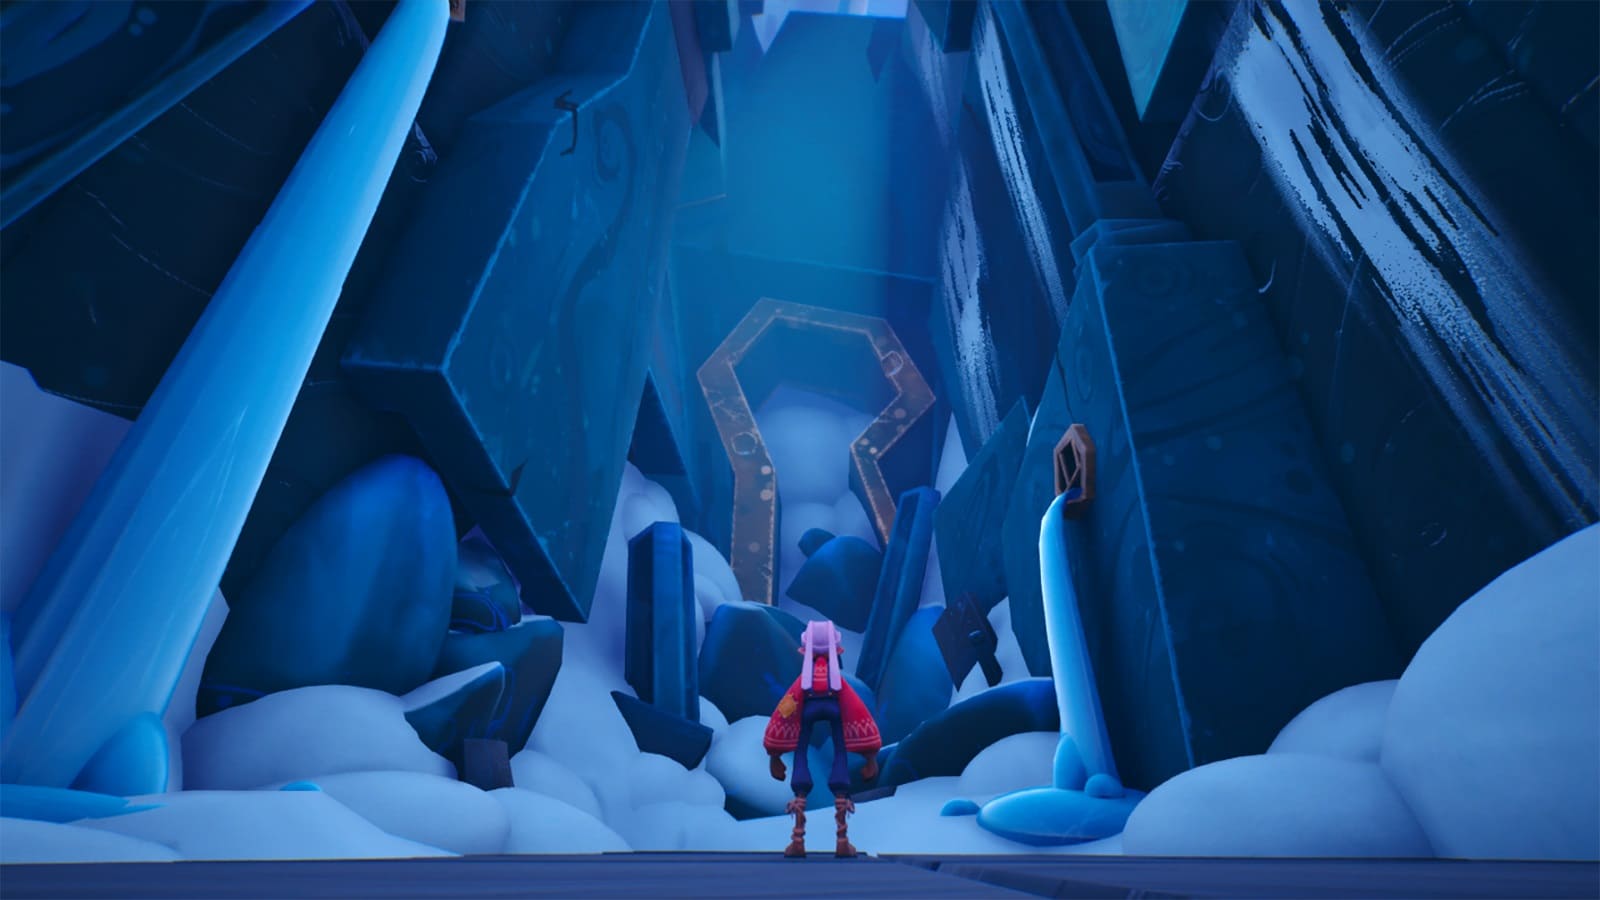 El protagonista está parado frente a una puerta con forma de cerradura rodeada de nieve.